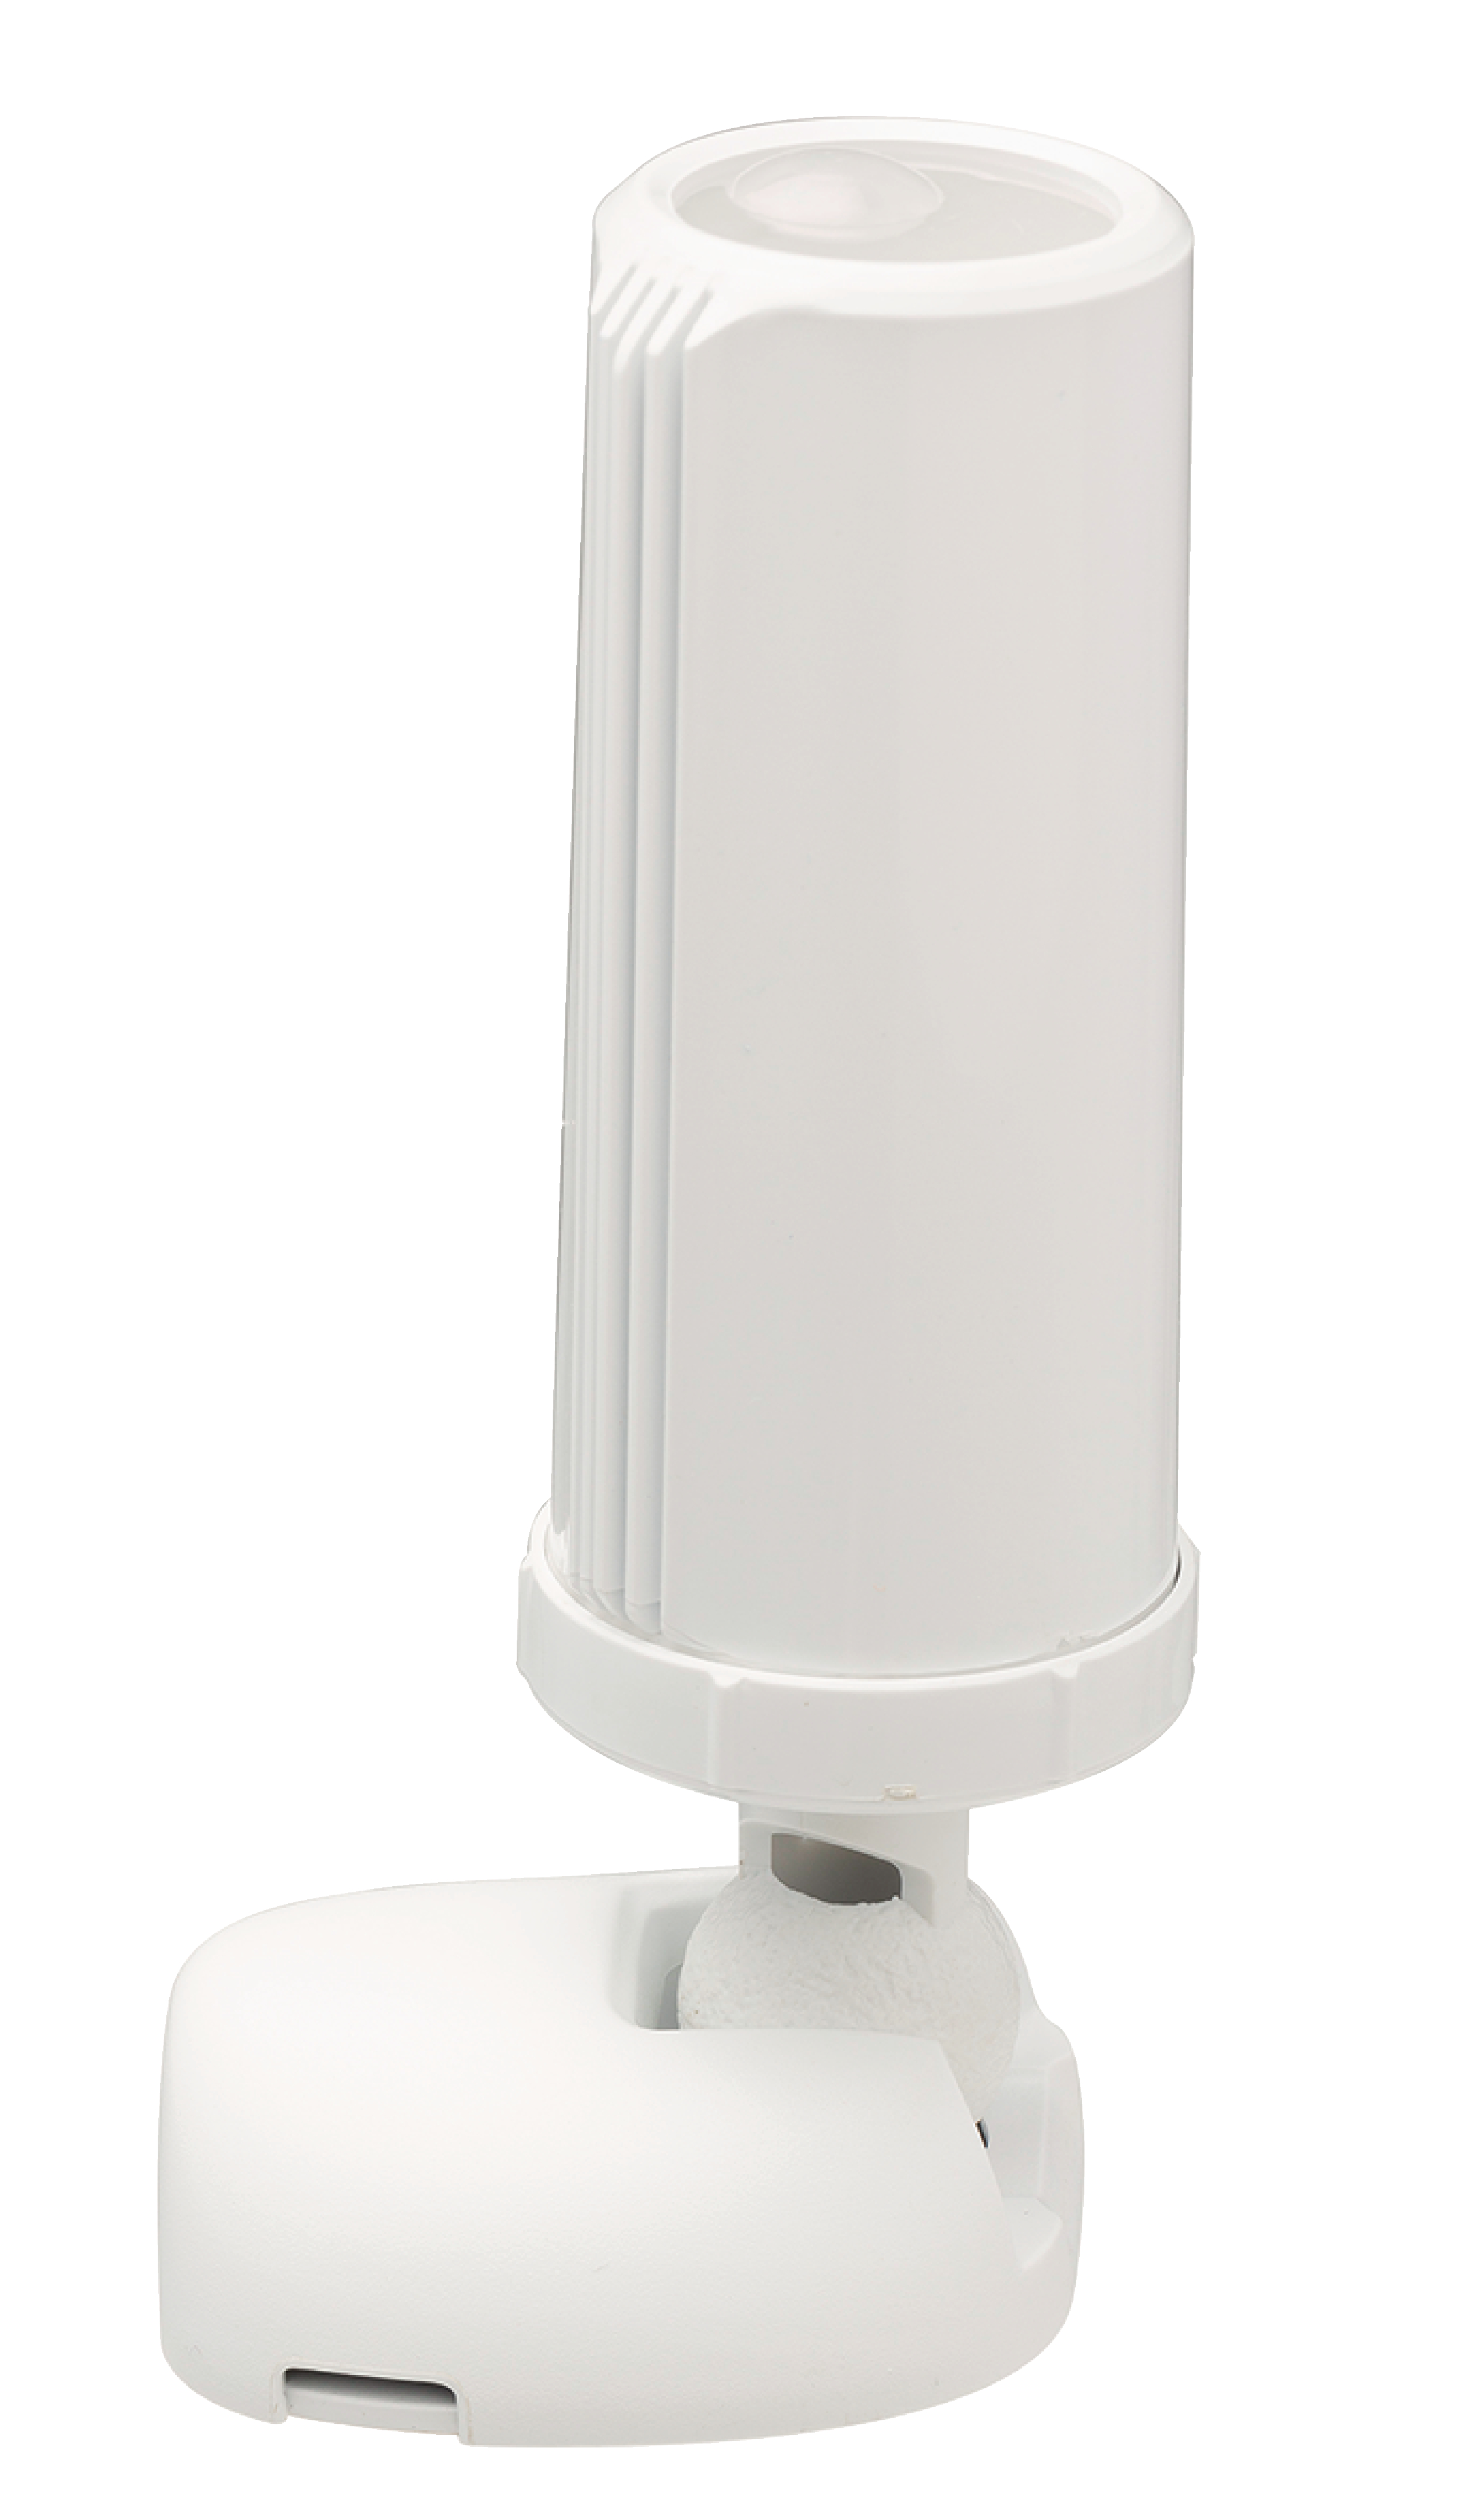 Buy This Today - LED-lamp met bewegingsmelder